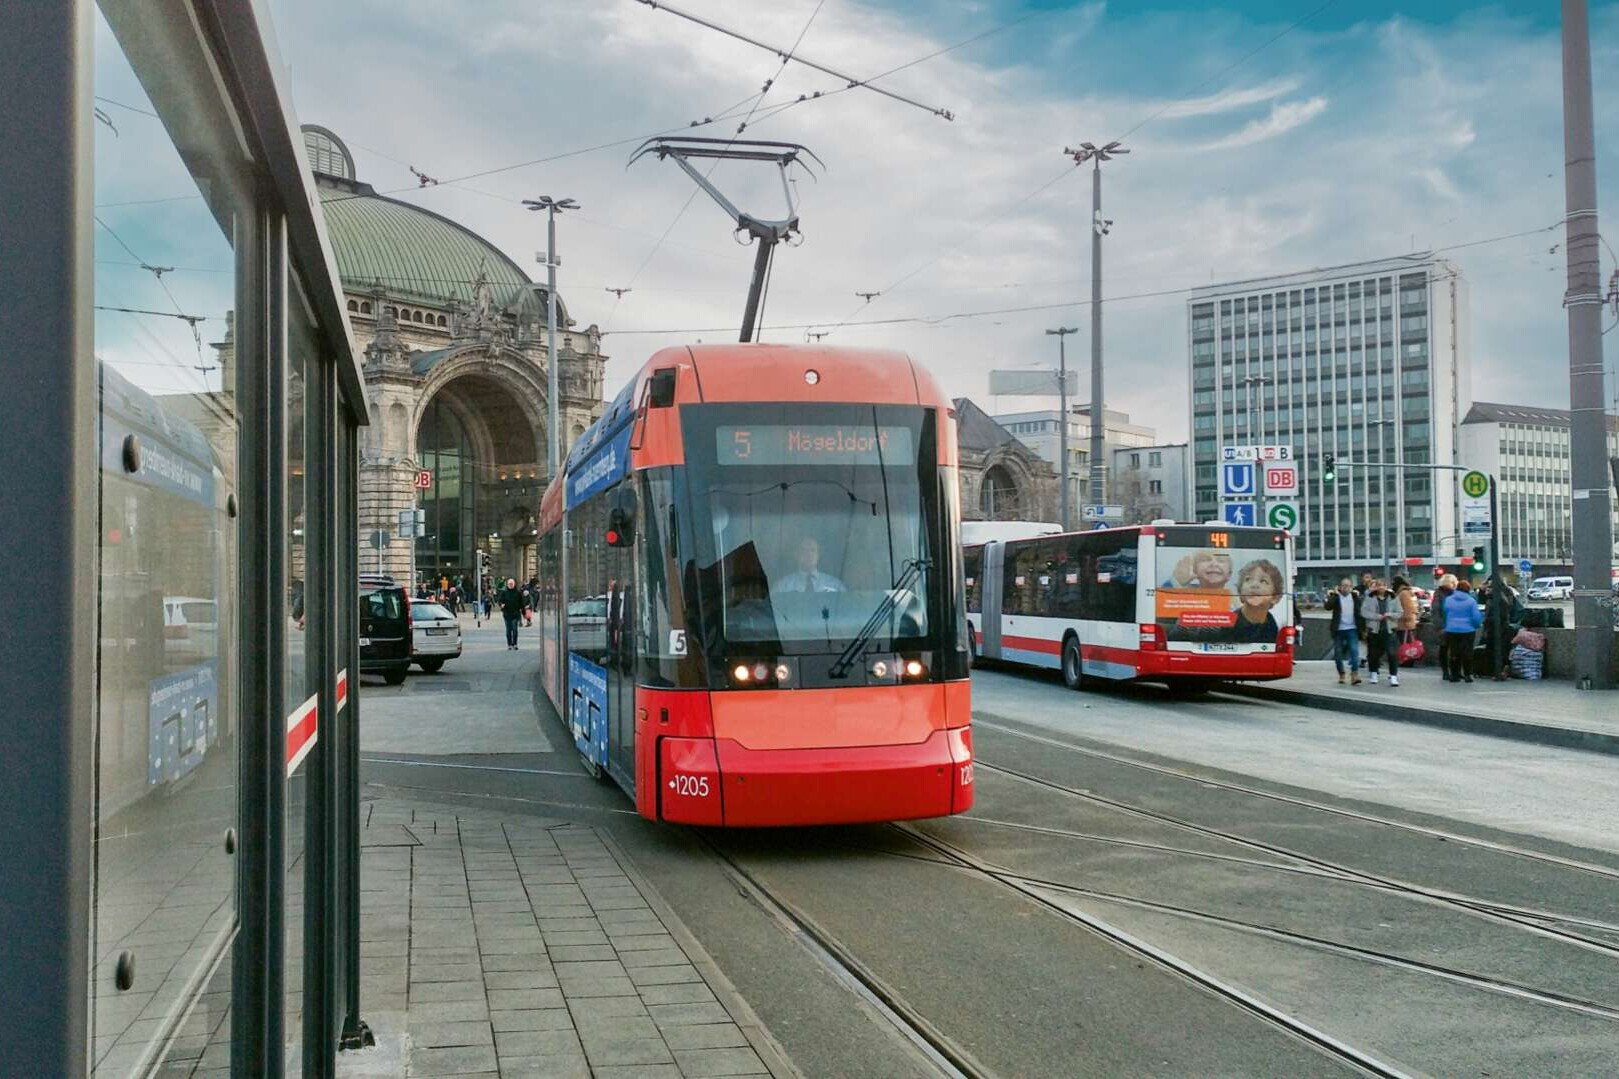 #bahnenneu Straßenbahn Nürnberg vor dem Bahnhof. Nachbearbeitetes Bild: Werbung Dritter auf Fahrzeugen/Gebäuden entfernt, Gesichter mittels KI verändert, kleinere Korrekturen, Himmel ausgetauscht.